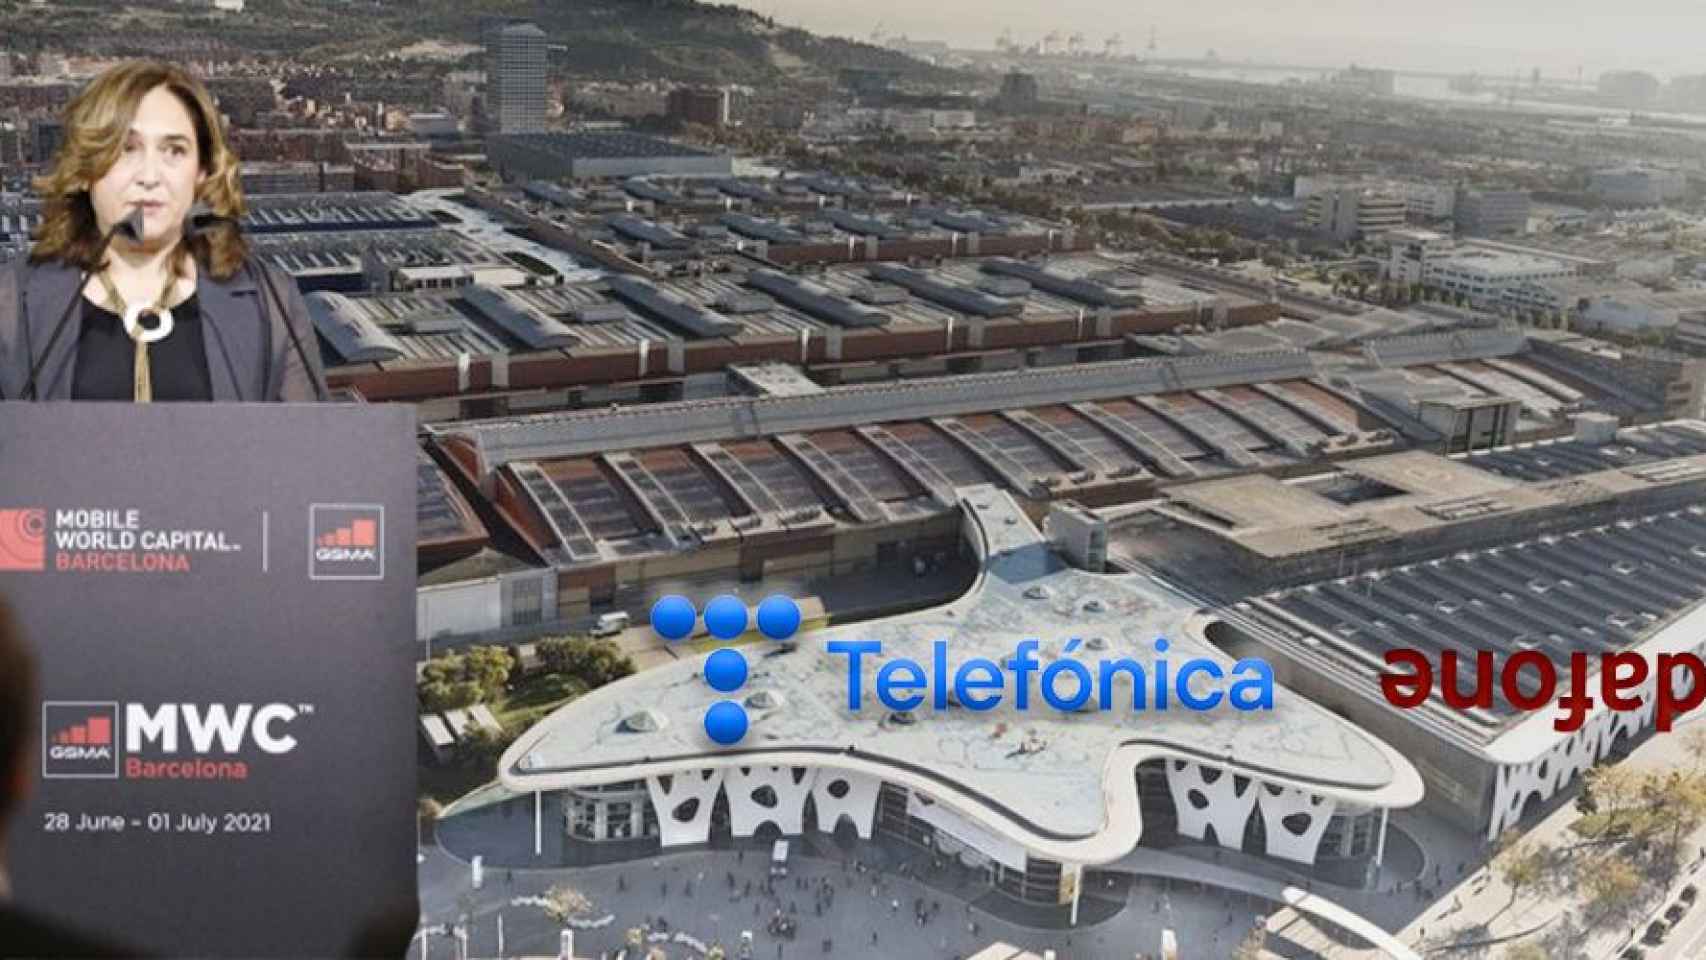 Fotomontaje en el que aparecen Ada Colau, alcaldesa de Barcelona, y los logos de Vodafone y Telefónica, con el Mobile World Congress (MWC) de fondo